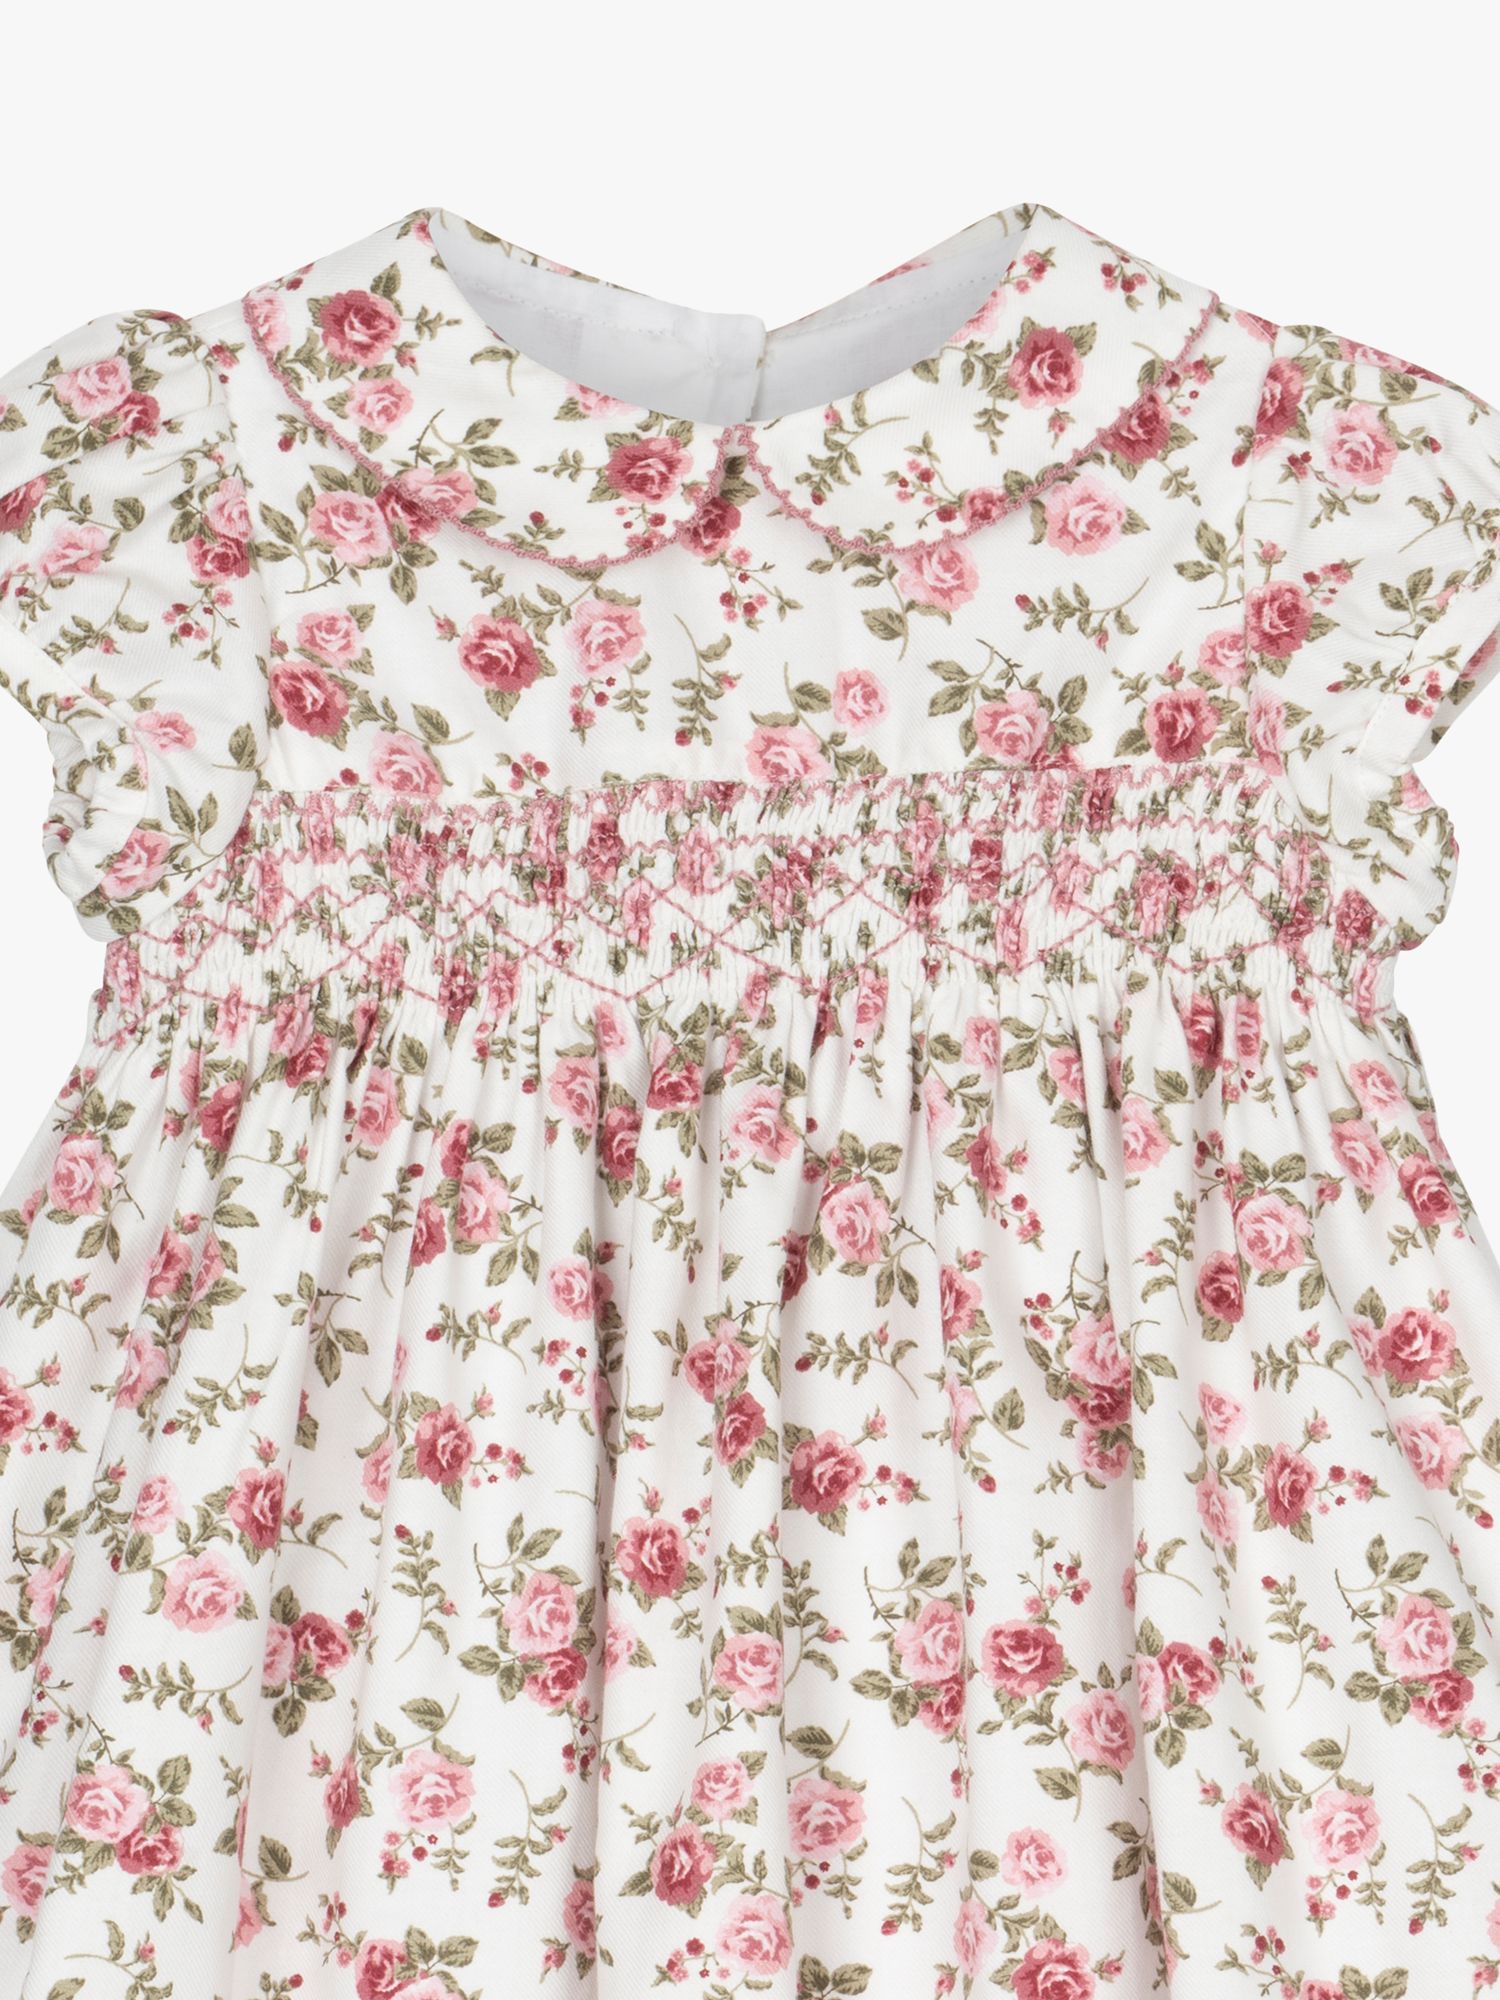 Buy Trotters Confiture Baby Arabella Rose Smocked Dress Online at johnlewis.com